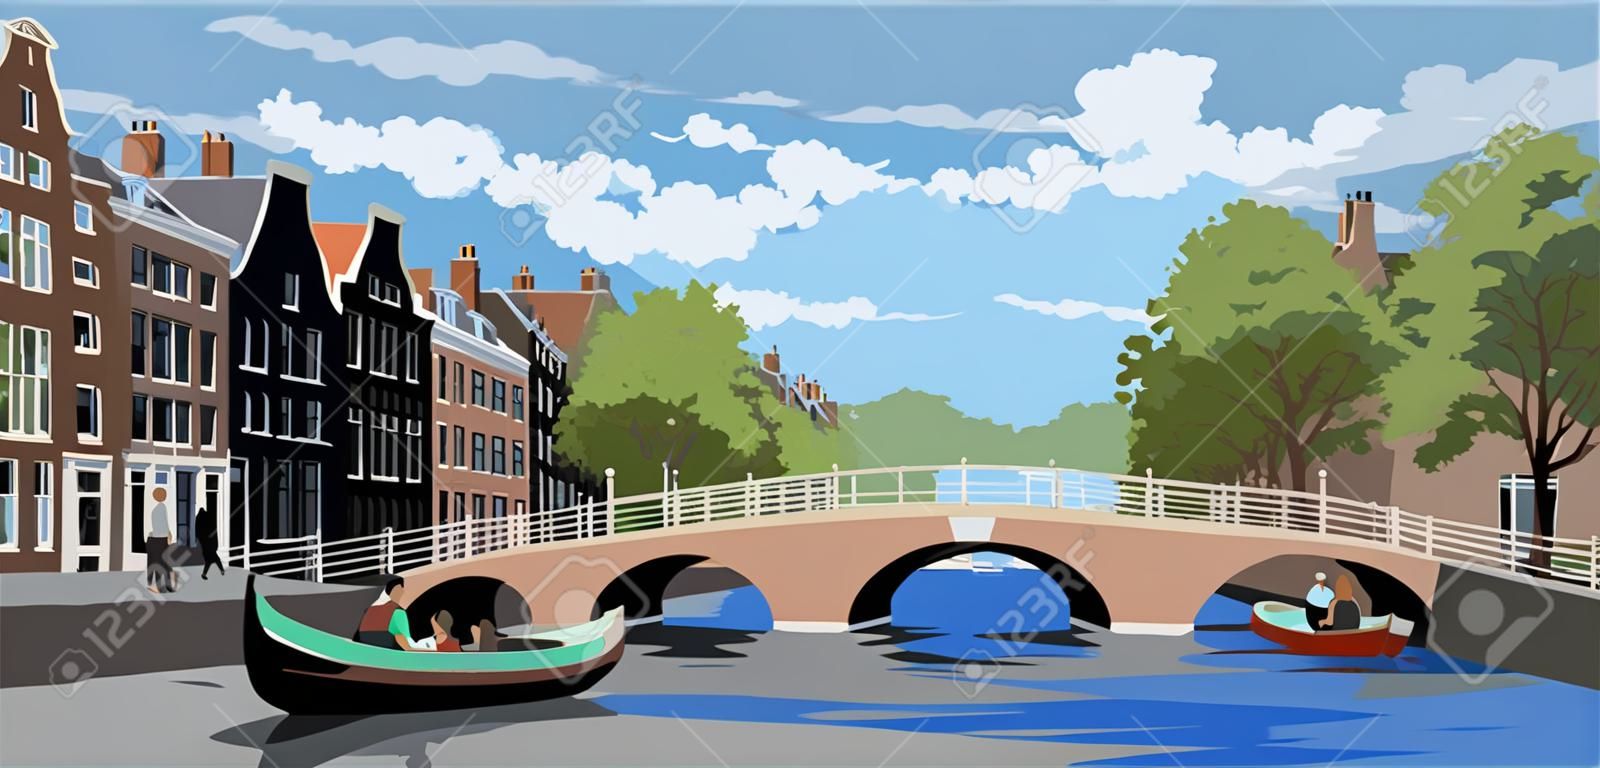 Paisaje urbano con puente sobre los canales de Amsterdam, Países Bajos. Hito de Holanda. Ilustración de vector colorido.